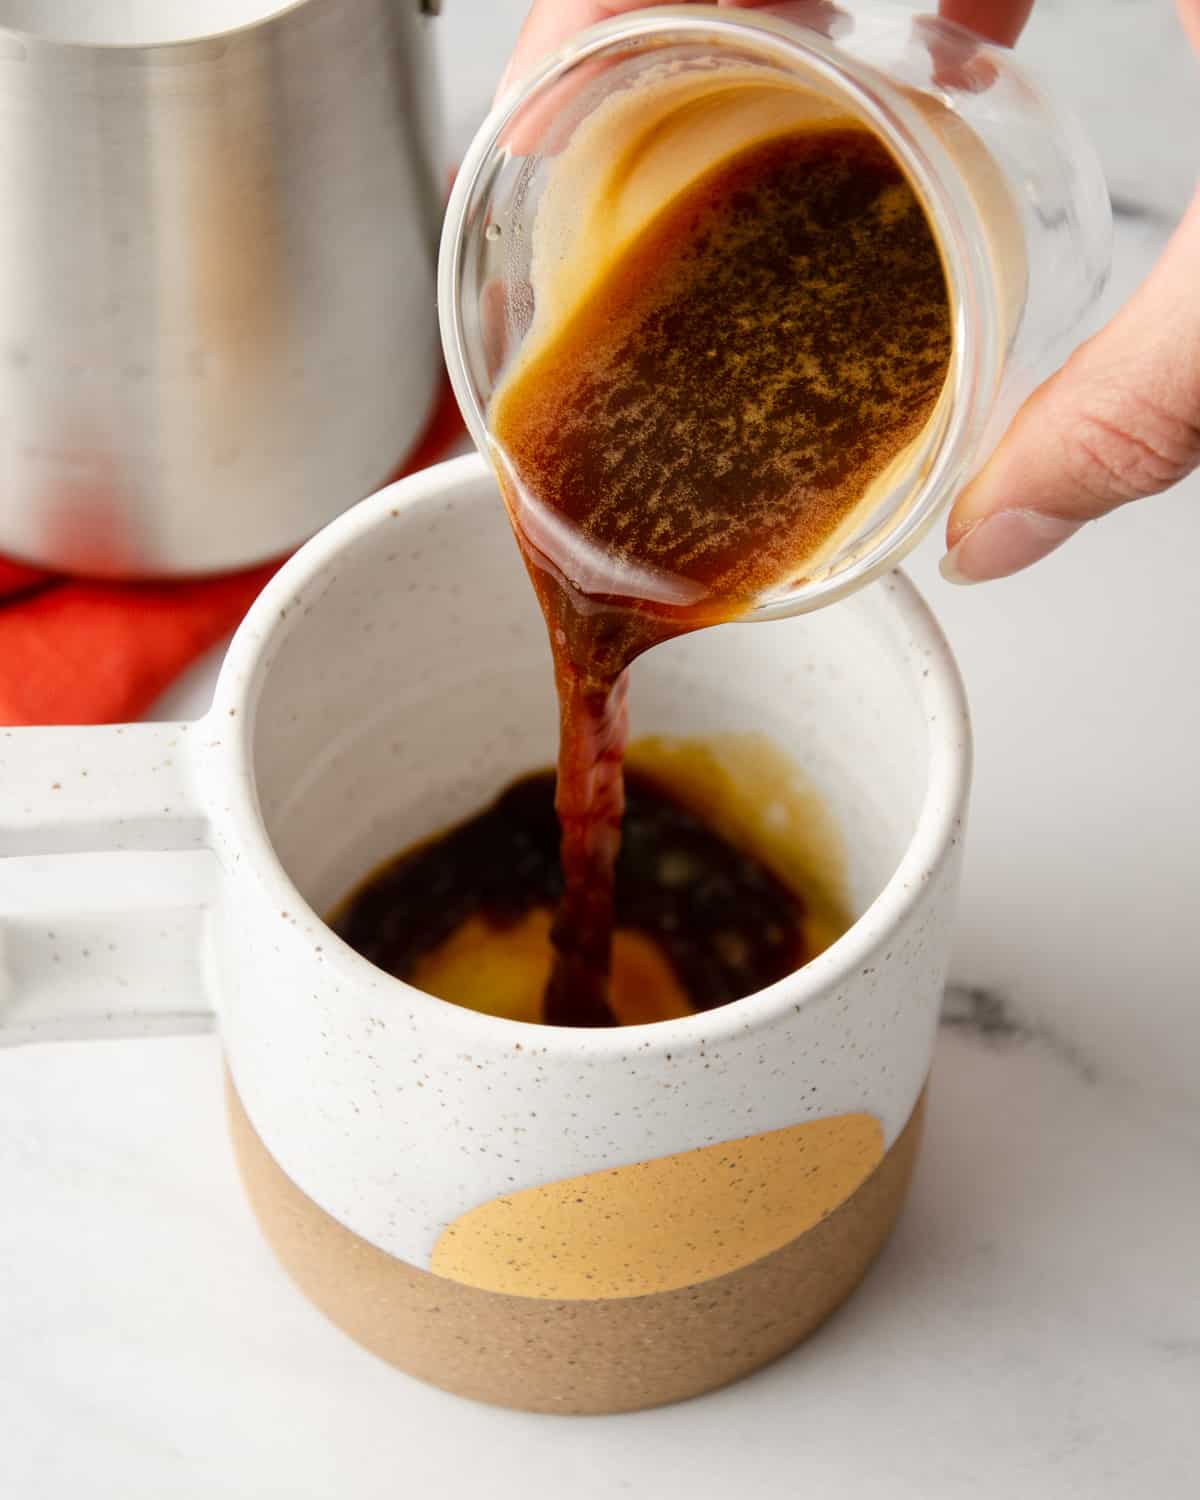 Pouring a shot of espresso into a coffee mug.